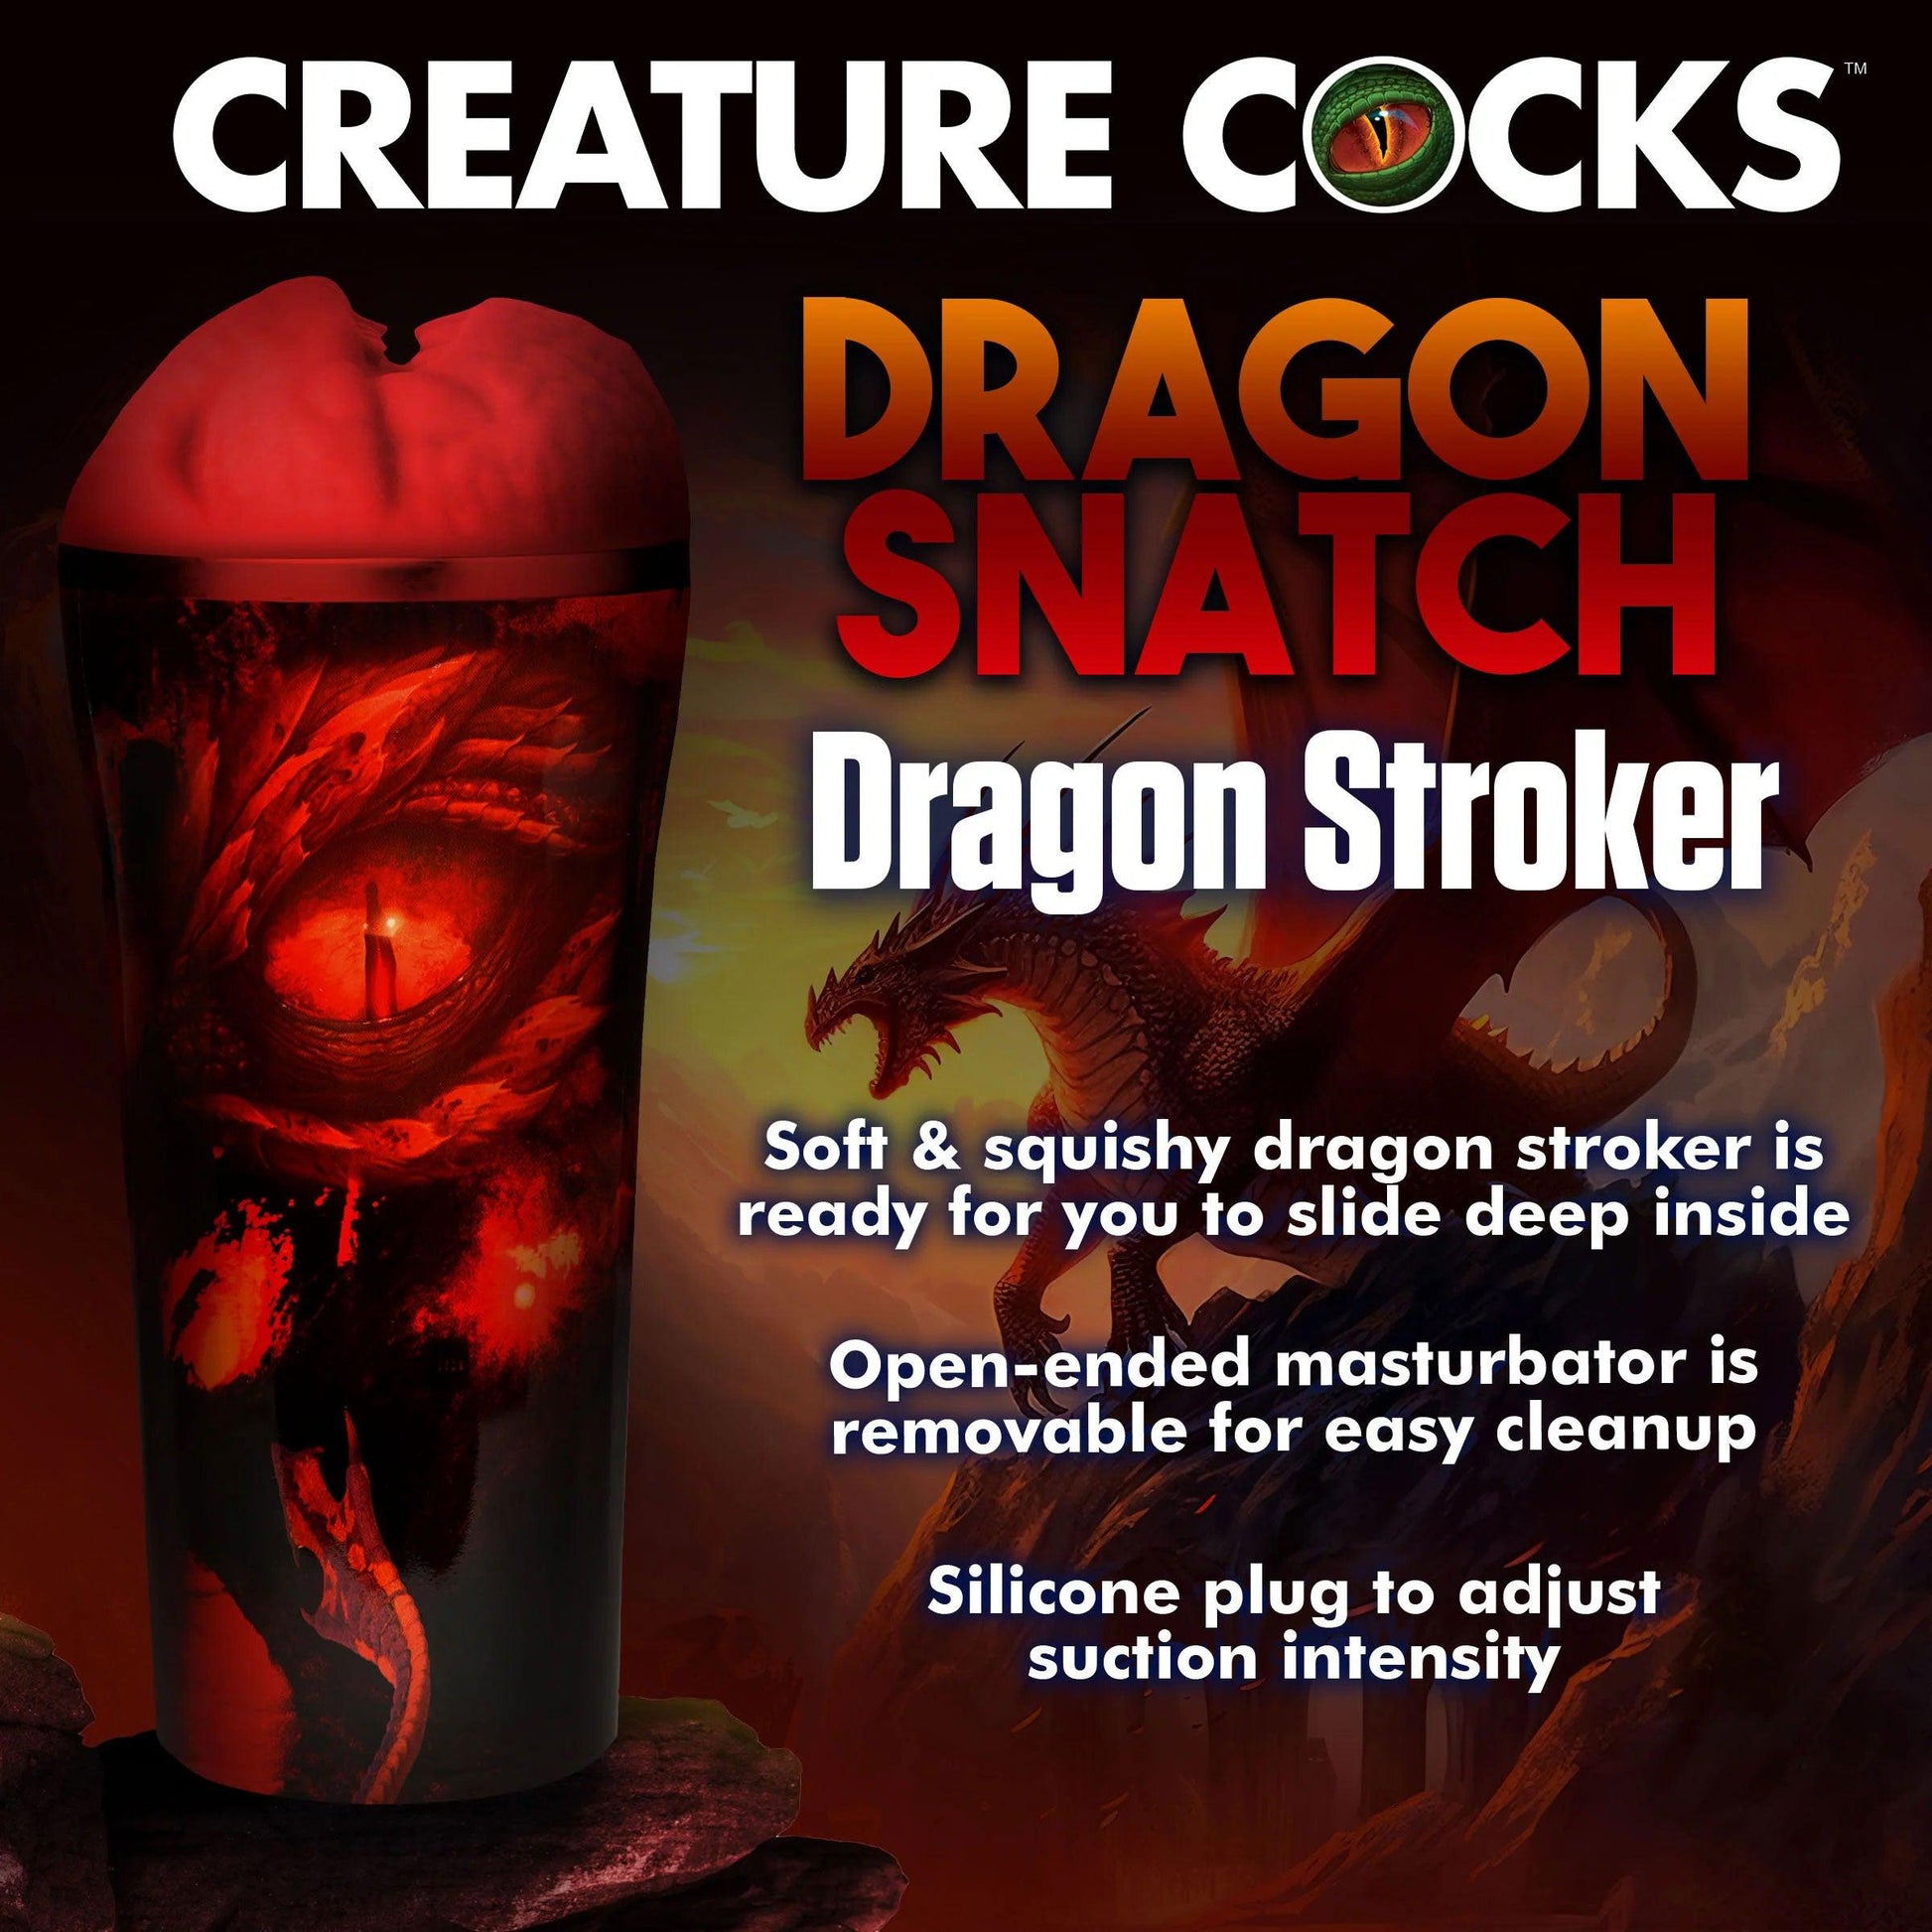 Dragon Snatch Dragon Stroker - Red